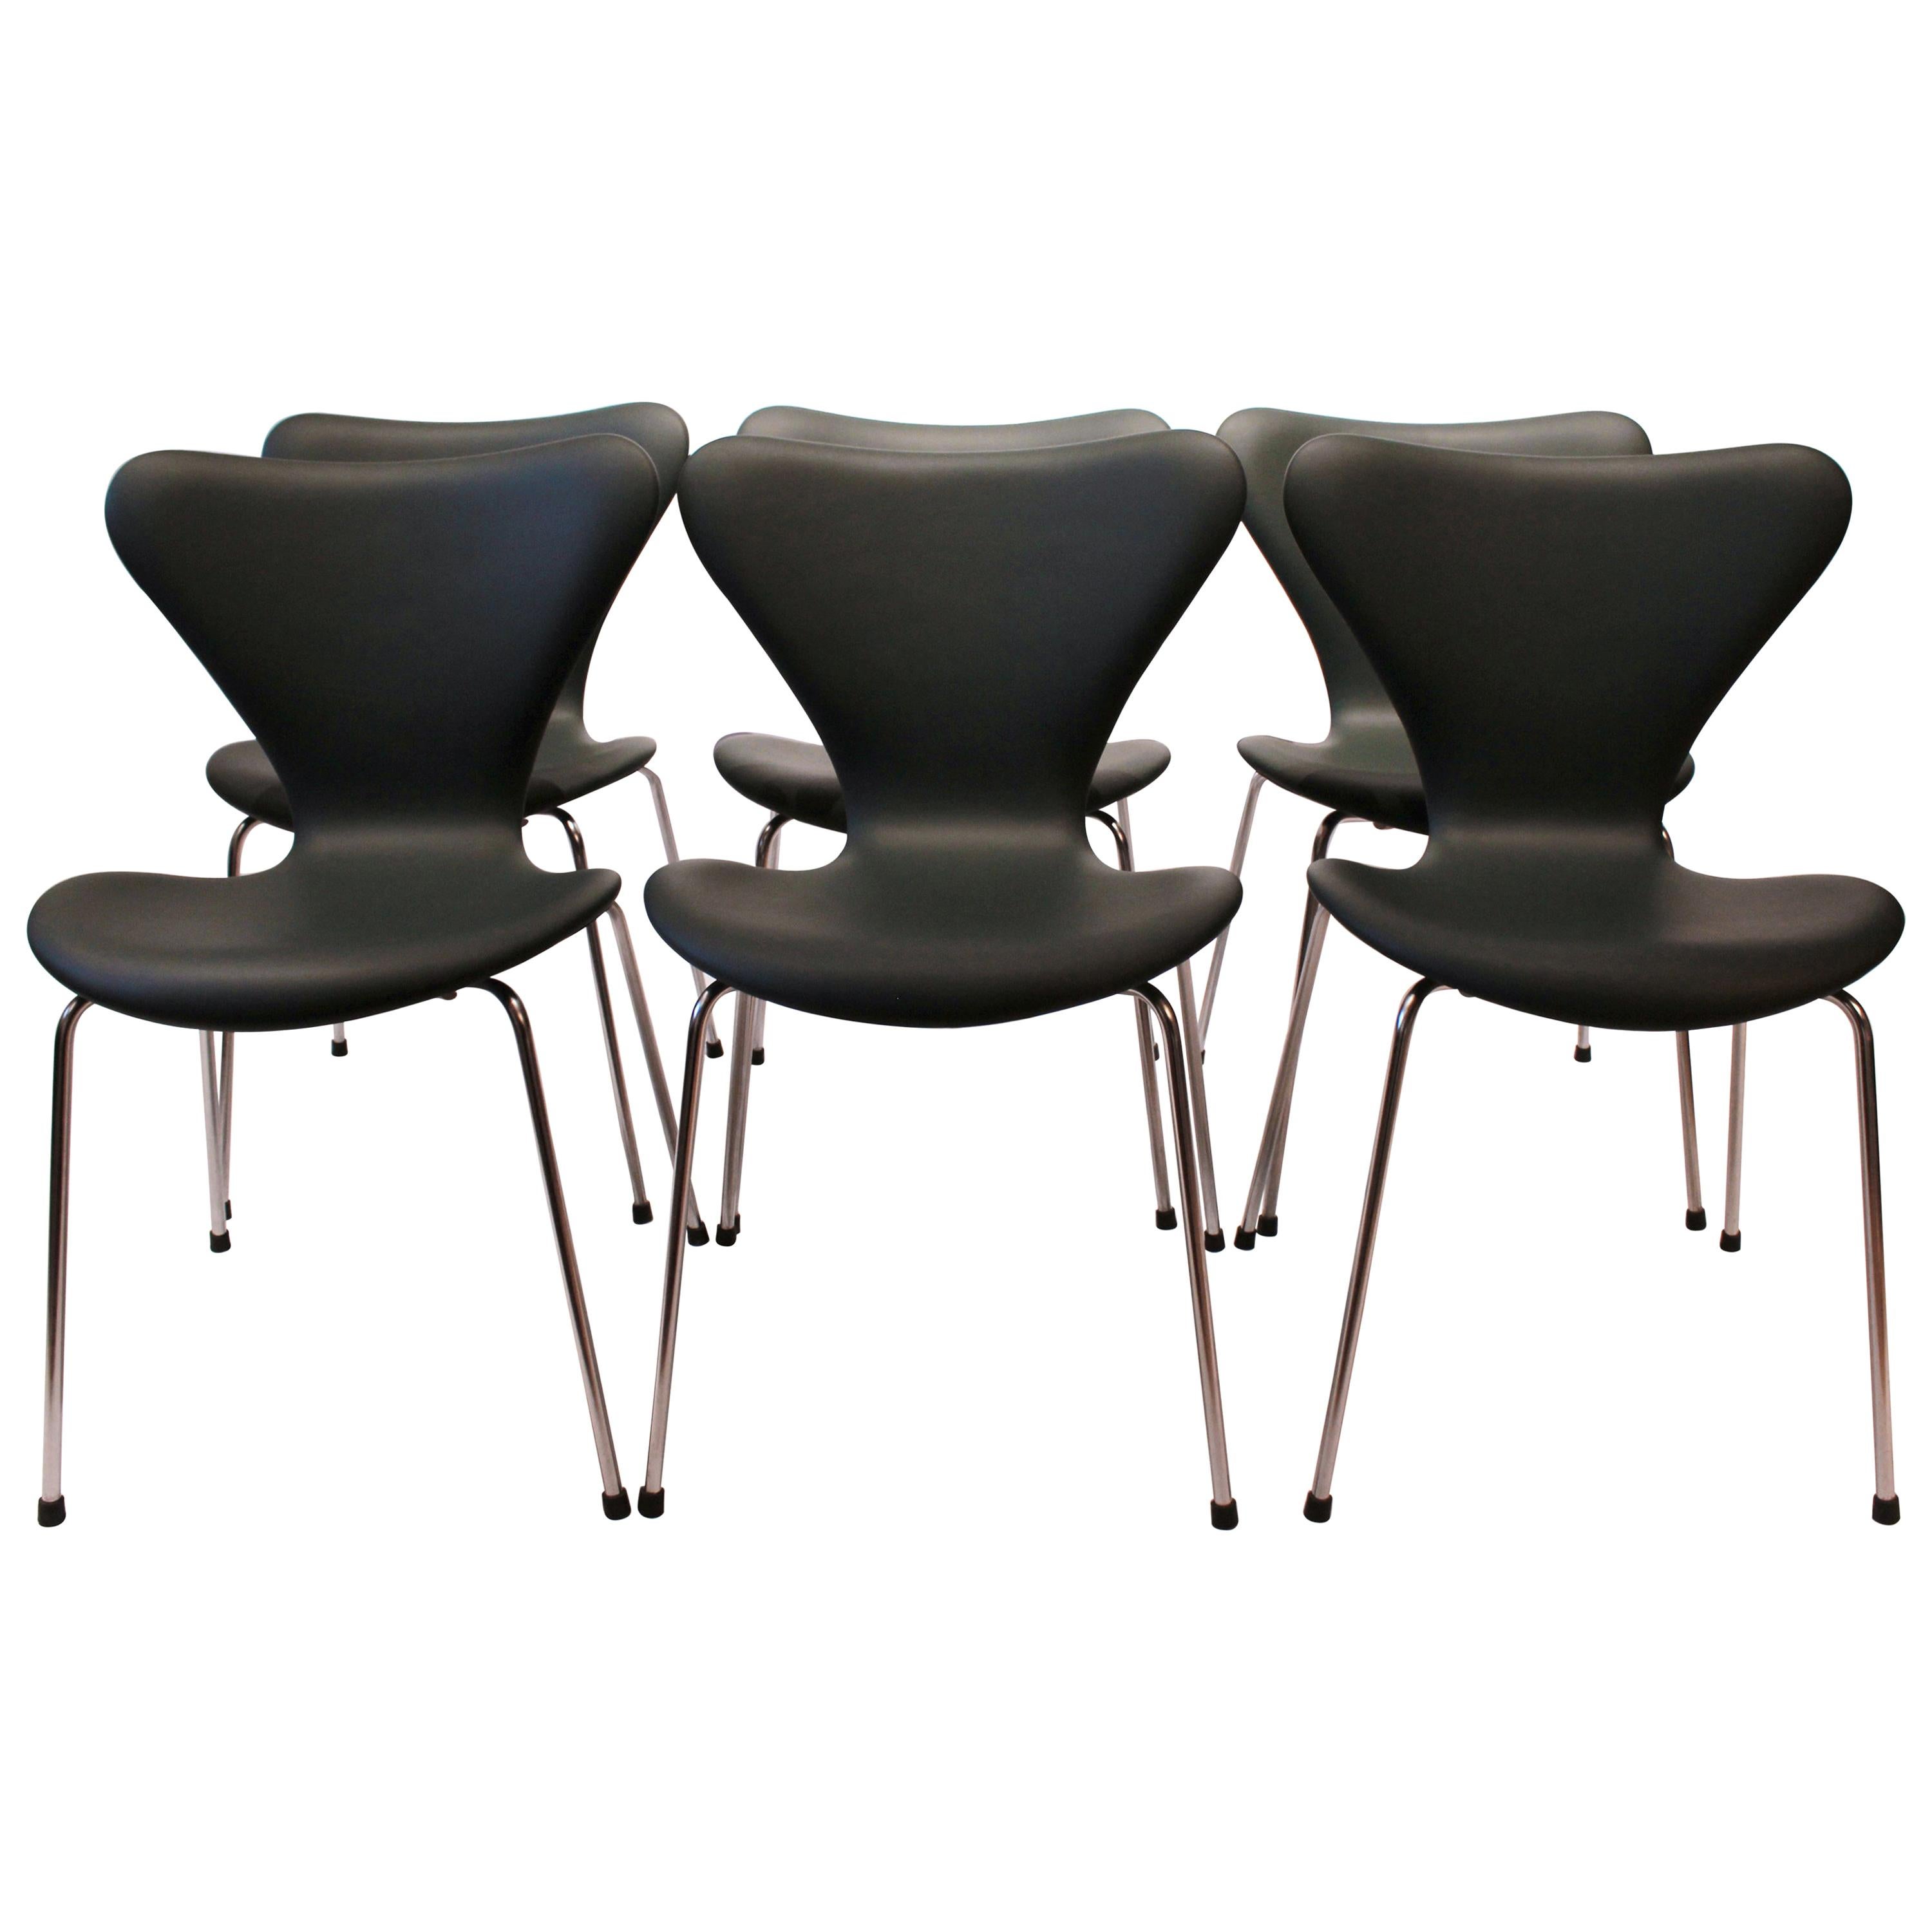 Satz von 6 sieben Stühlen, Modell 3107, schwarzes Leder, von Arne Jacobsen